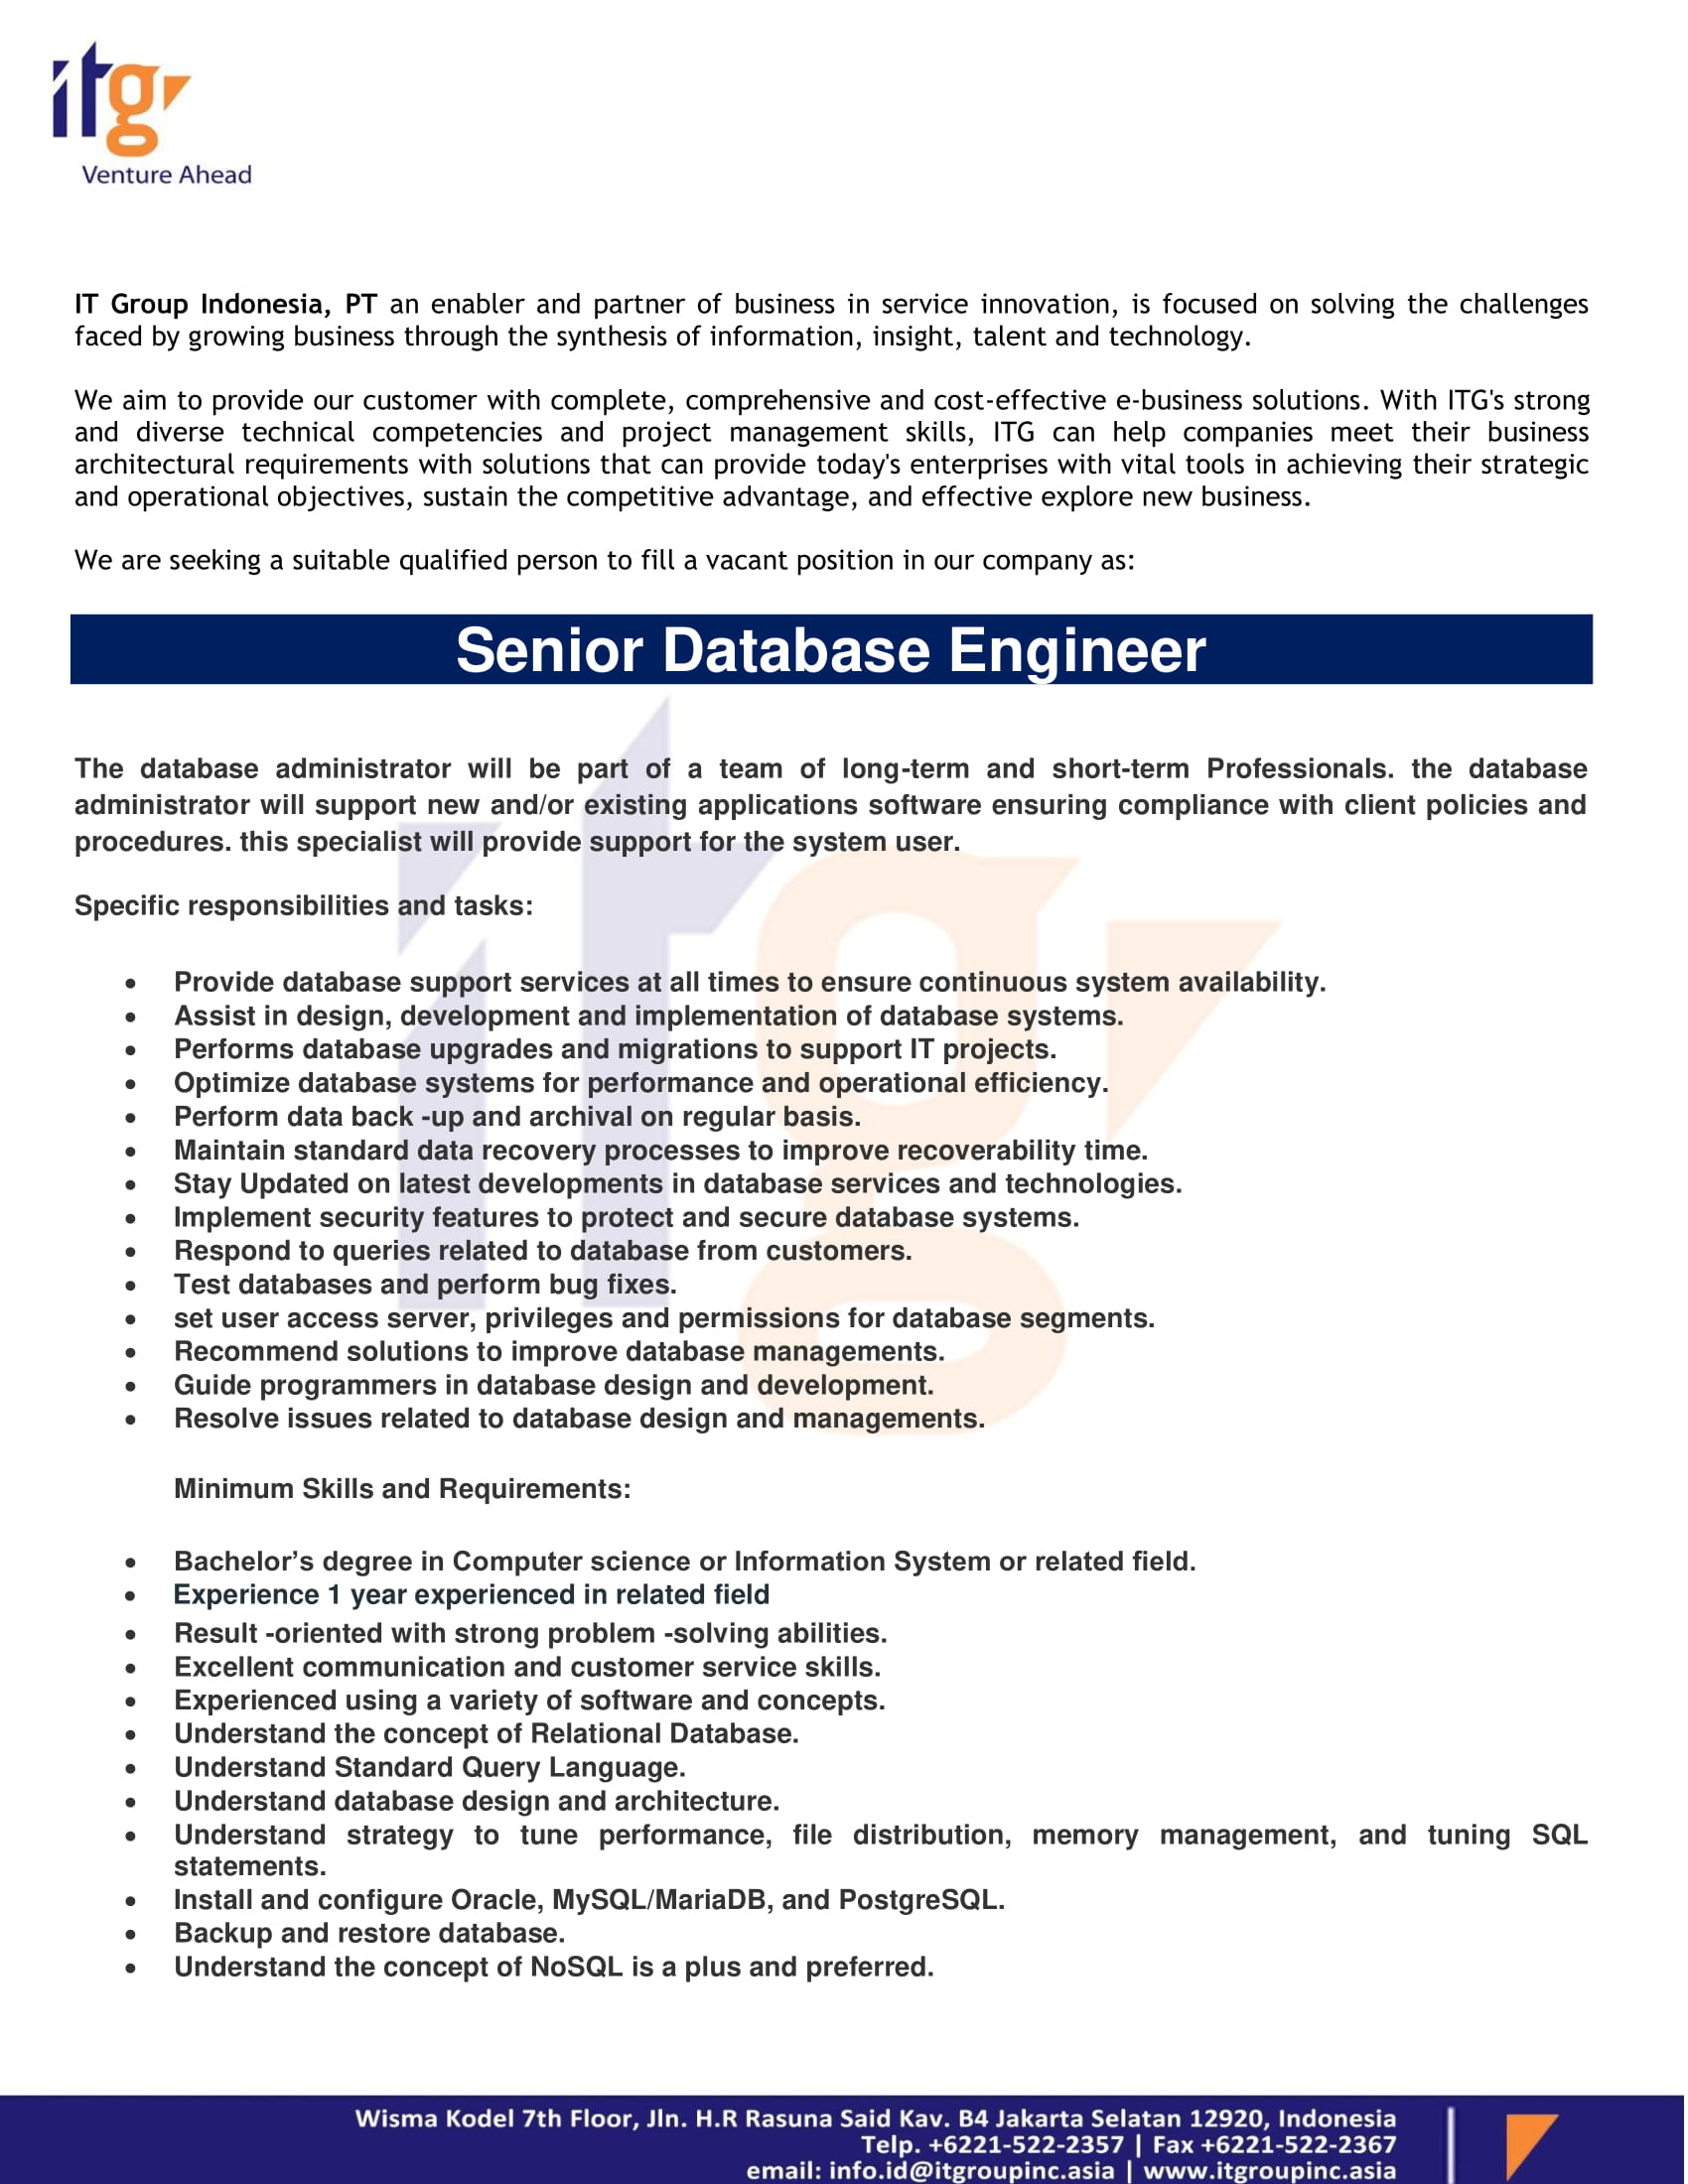 materi-lowongan-senior-database-engineer-1.jpg